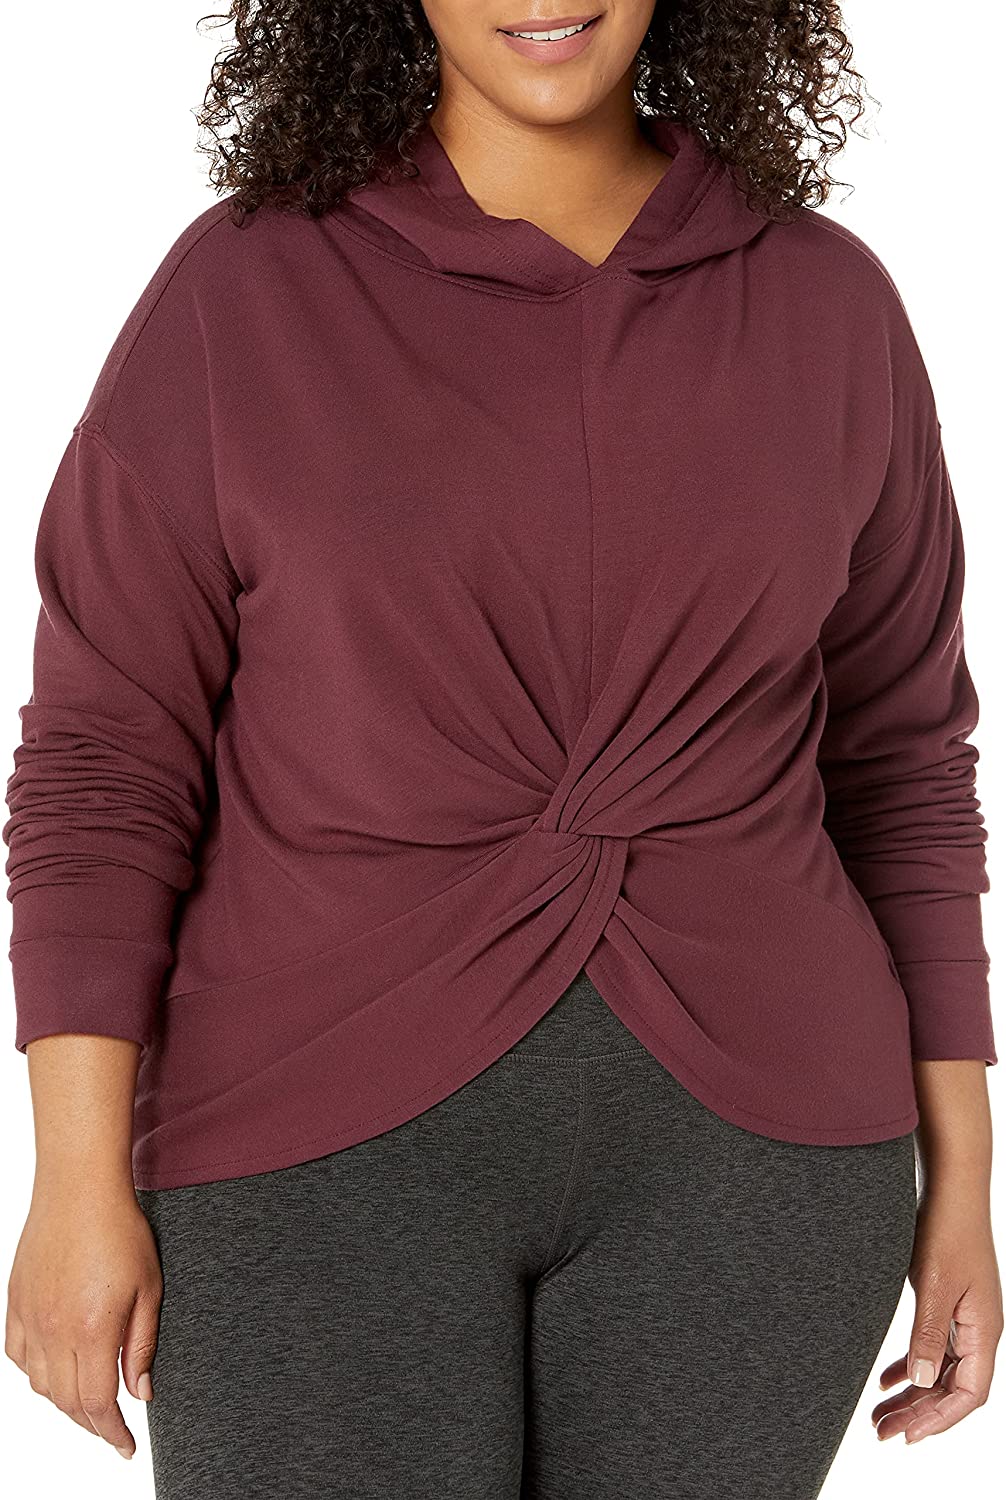 Core 10 Women's Cloud Soft Fleece Standard-Fit Long-Sleeve Hoodie Sweatshirt 